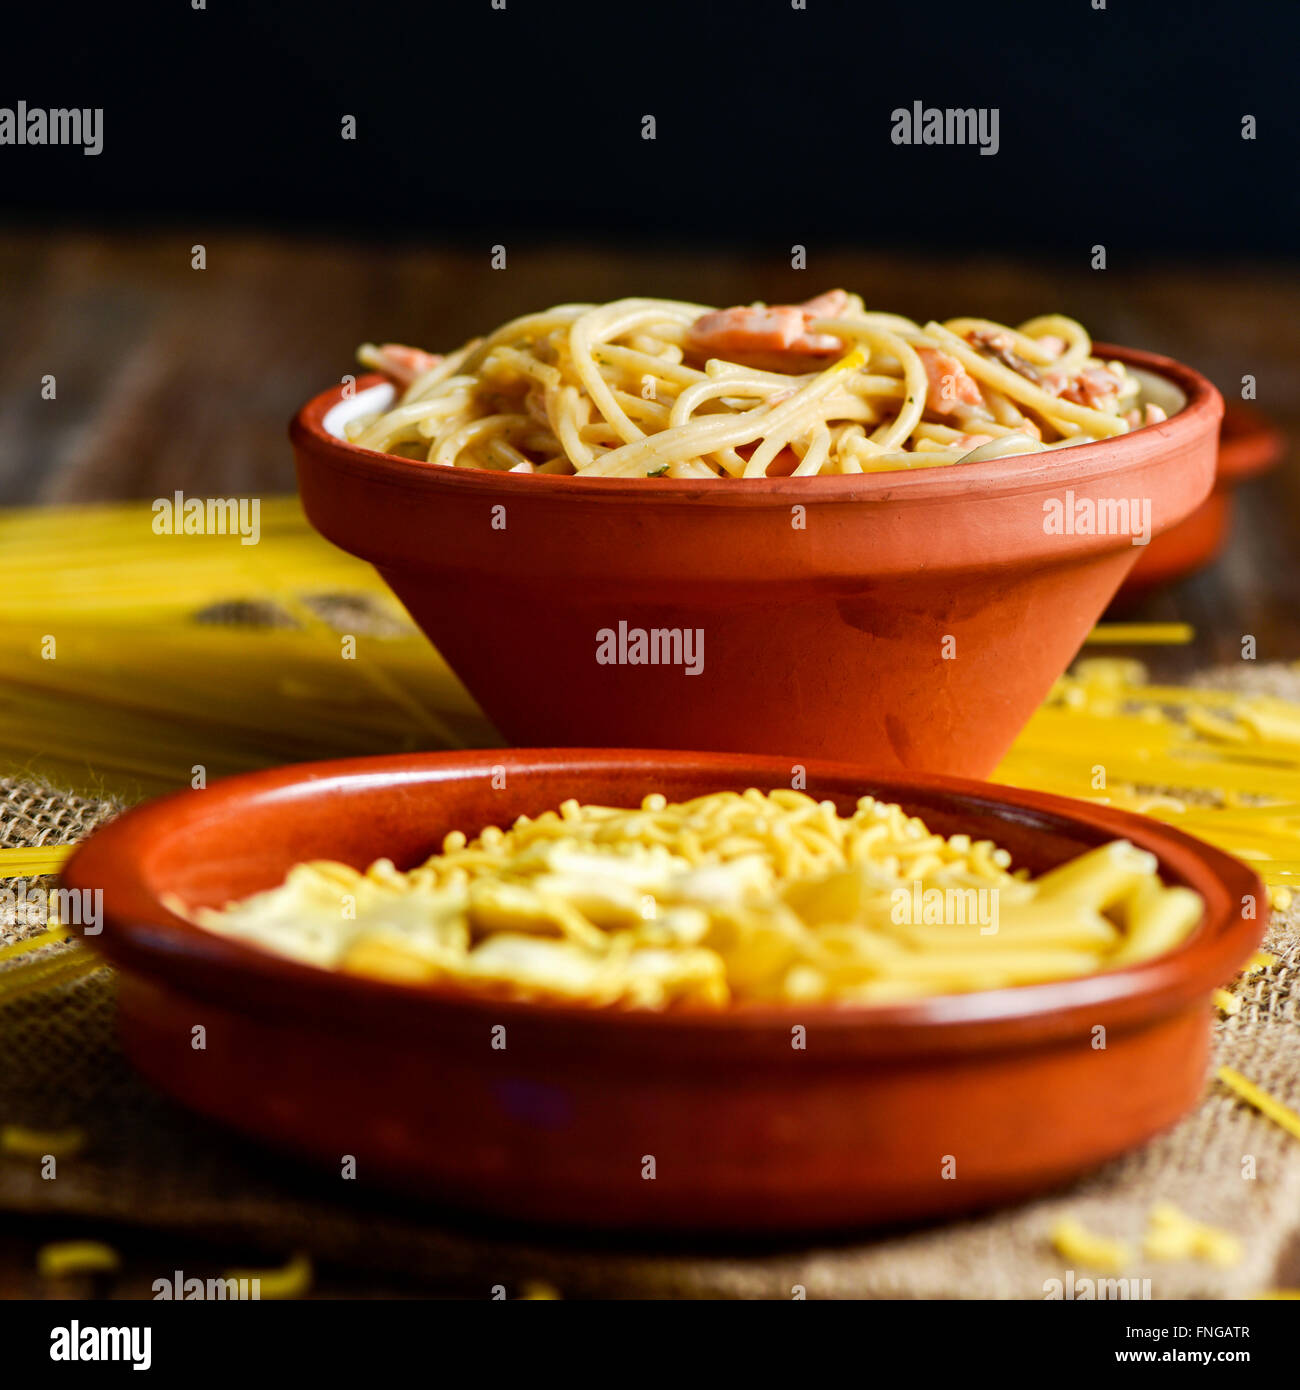 Libre d'une plaque en terre cuite avec quelques pâtes alimentaires non cuites et un bol de faïence avec spaghetti alla carbonara, sur une table Banque D'Images